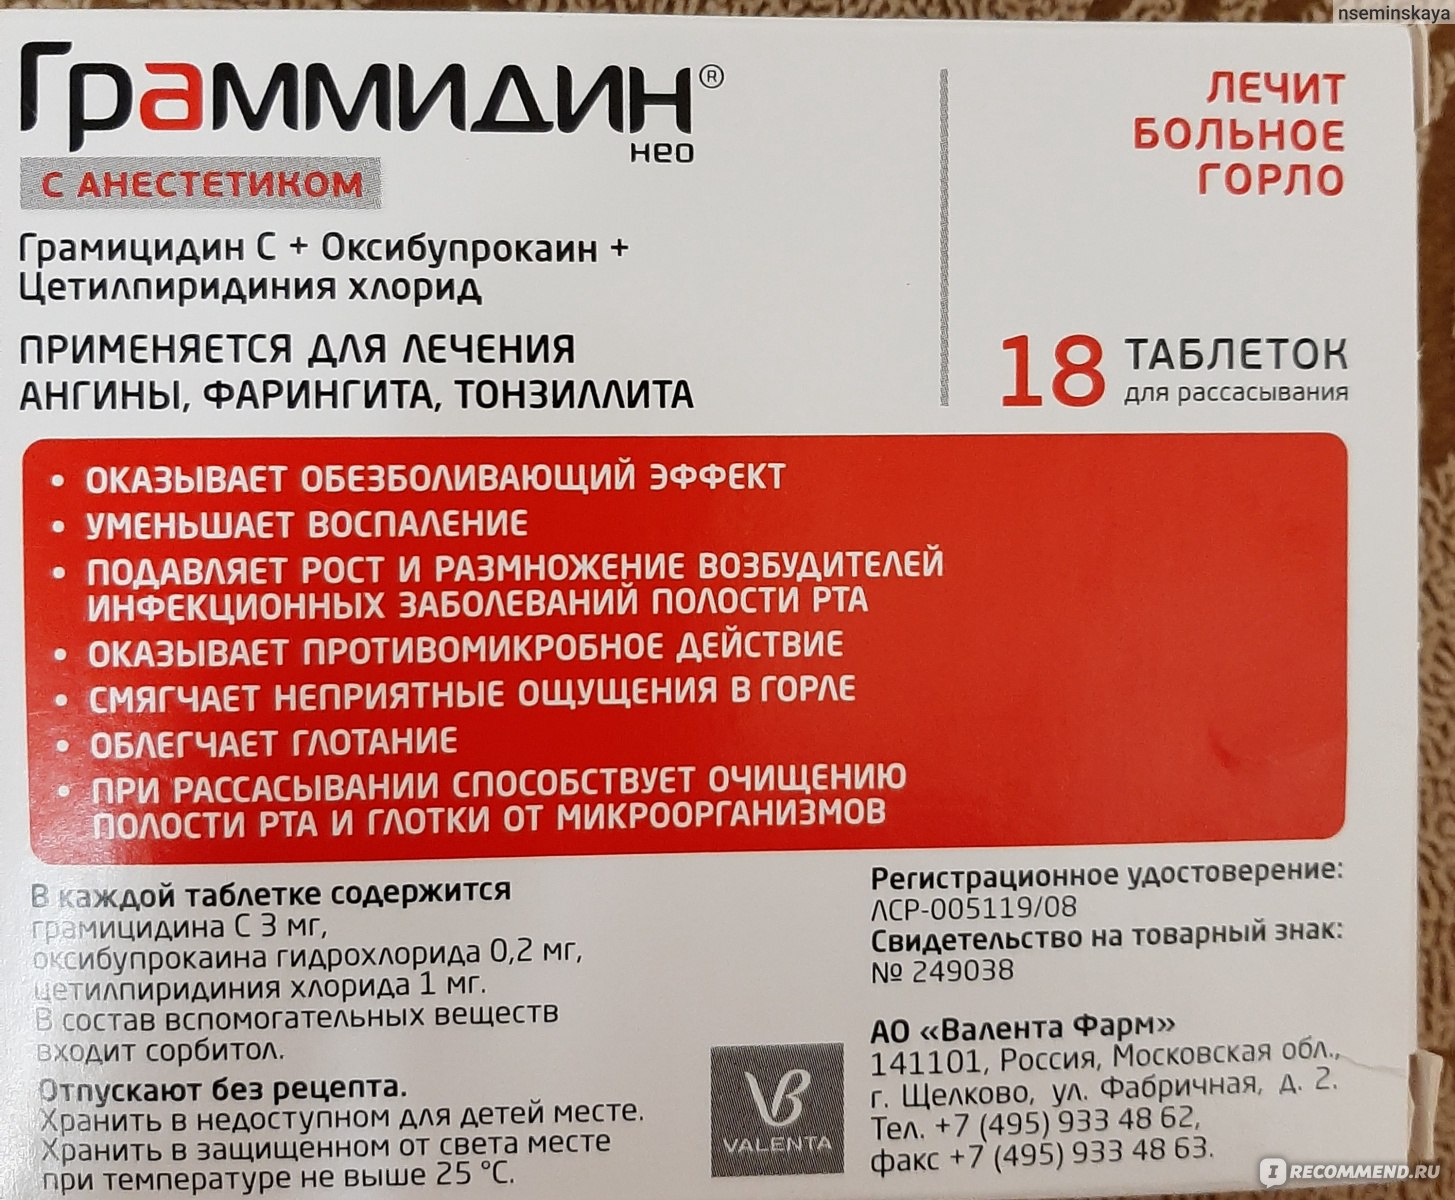 Граммидин с антибиотиком с красным шарфом